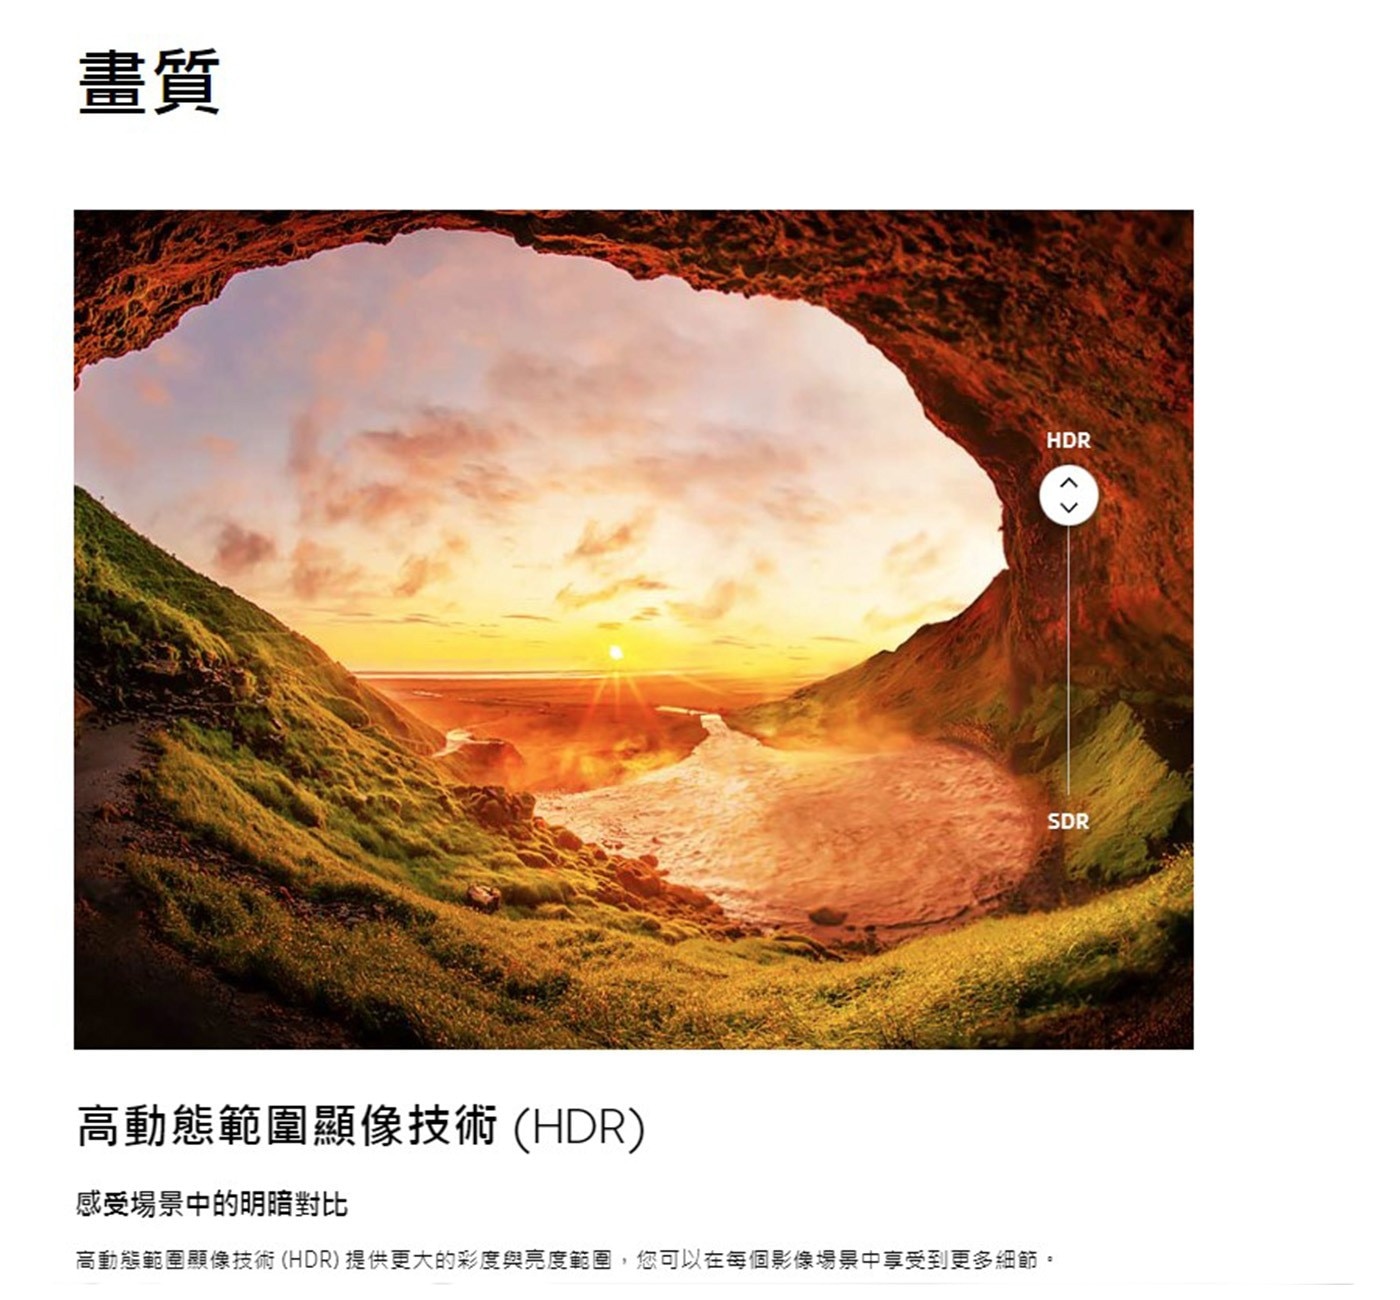 Samsung 75吋 4K UHD 電視 UA75CU8000XXZW高動態範圍顯色技術HDR